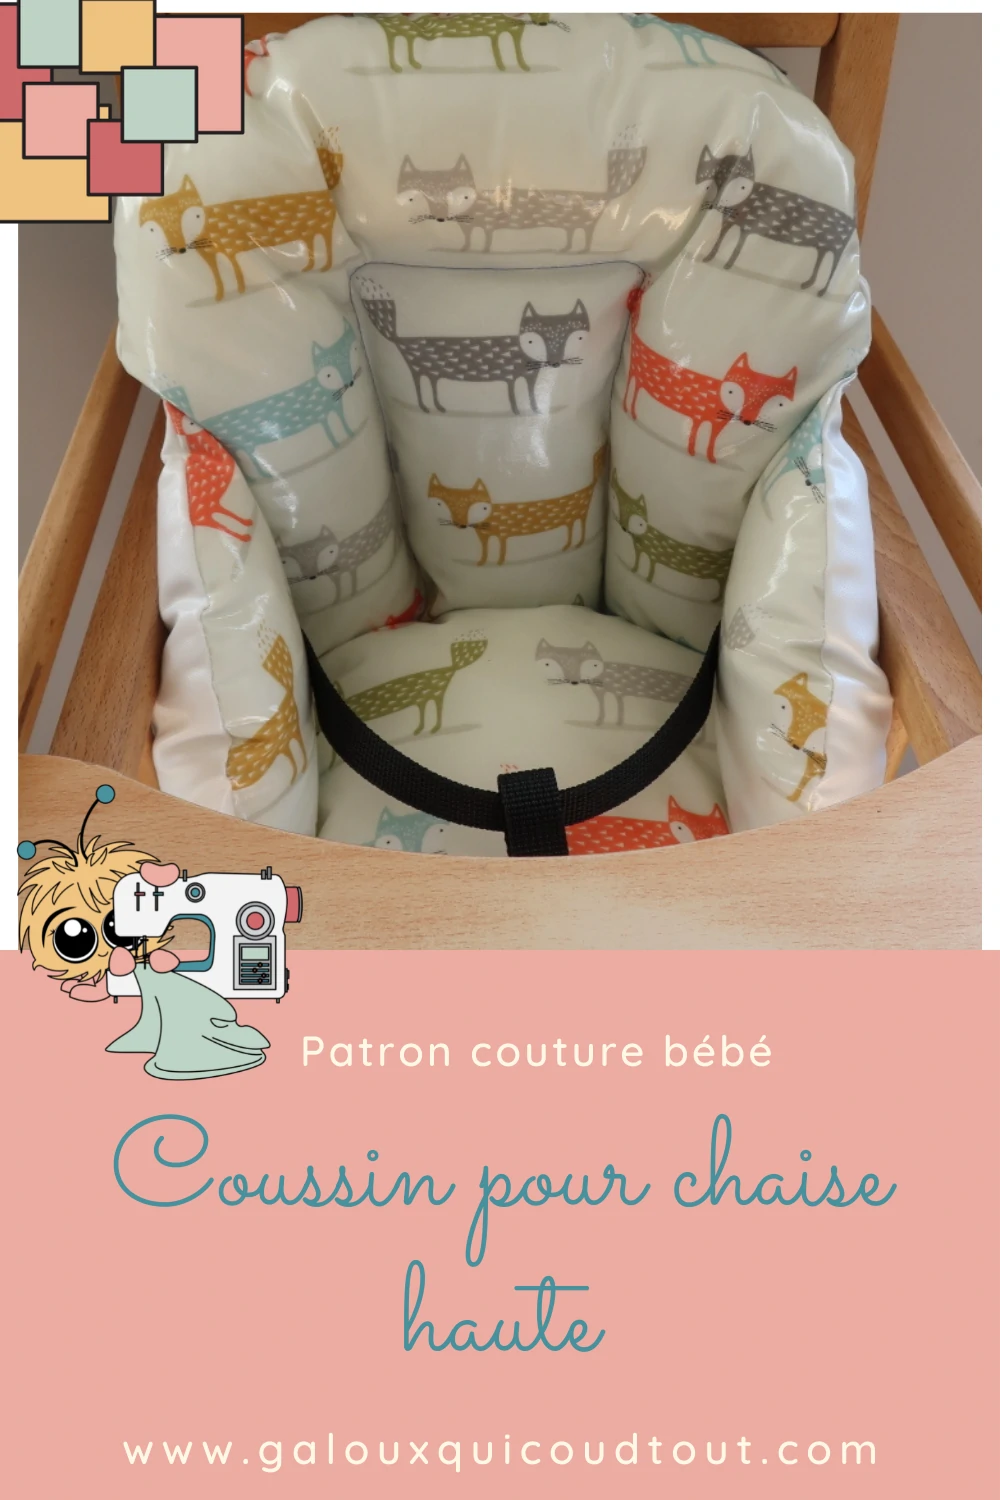 Housse chaise haute bébé - Mes projets - Couture - Breizh Mama